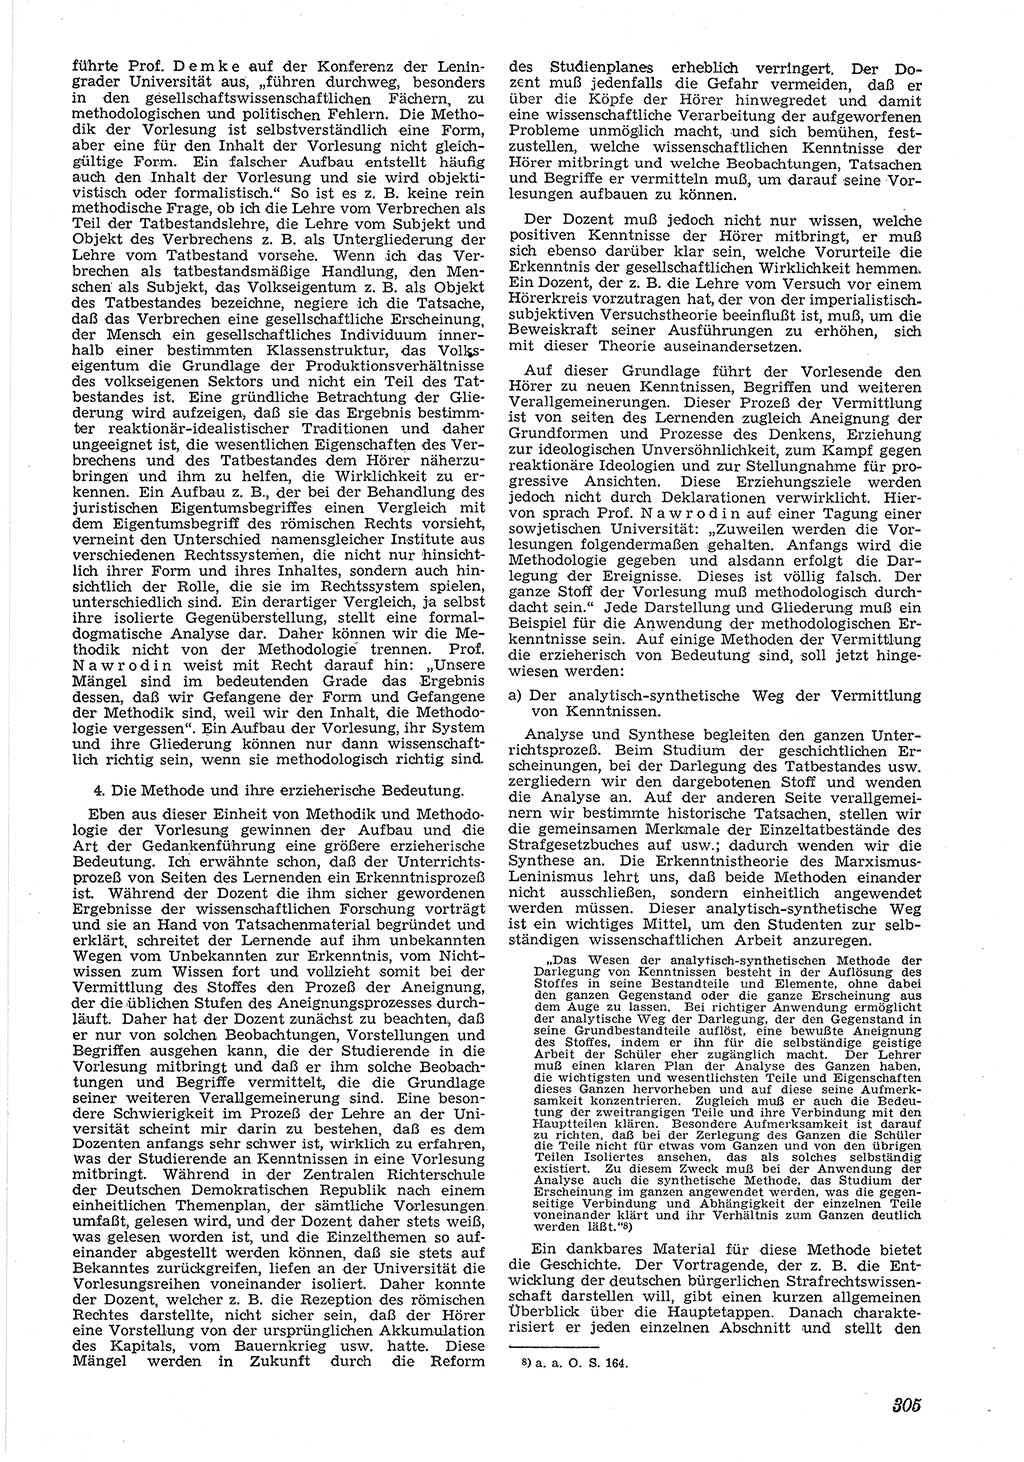 Neue Justiz (NJ), Zeitschrift für Recht und Rechtswissenschaft [Deutsche Demokratische Republik (DDR)], 5. Jahrgang 1951, Seite 305 (NJ DDR 1951, S. 305)